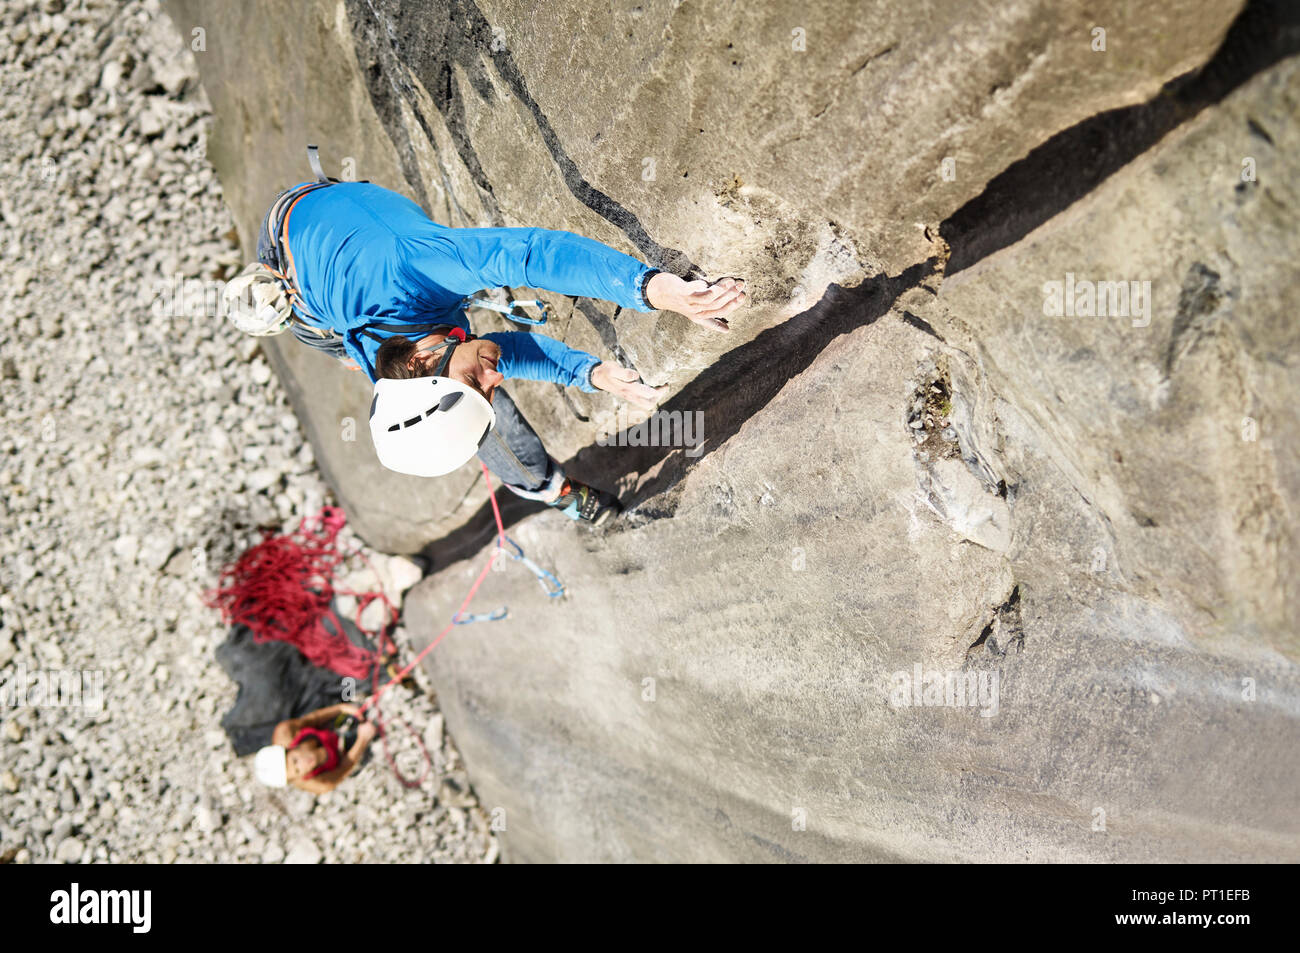 L'Autriche, Innsbruck, Martinswand, l'homme dans l'escalade de rochers Banque D'Images